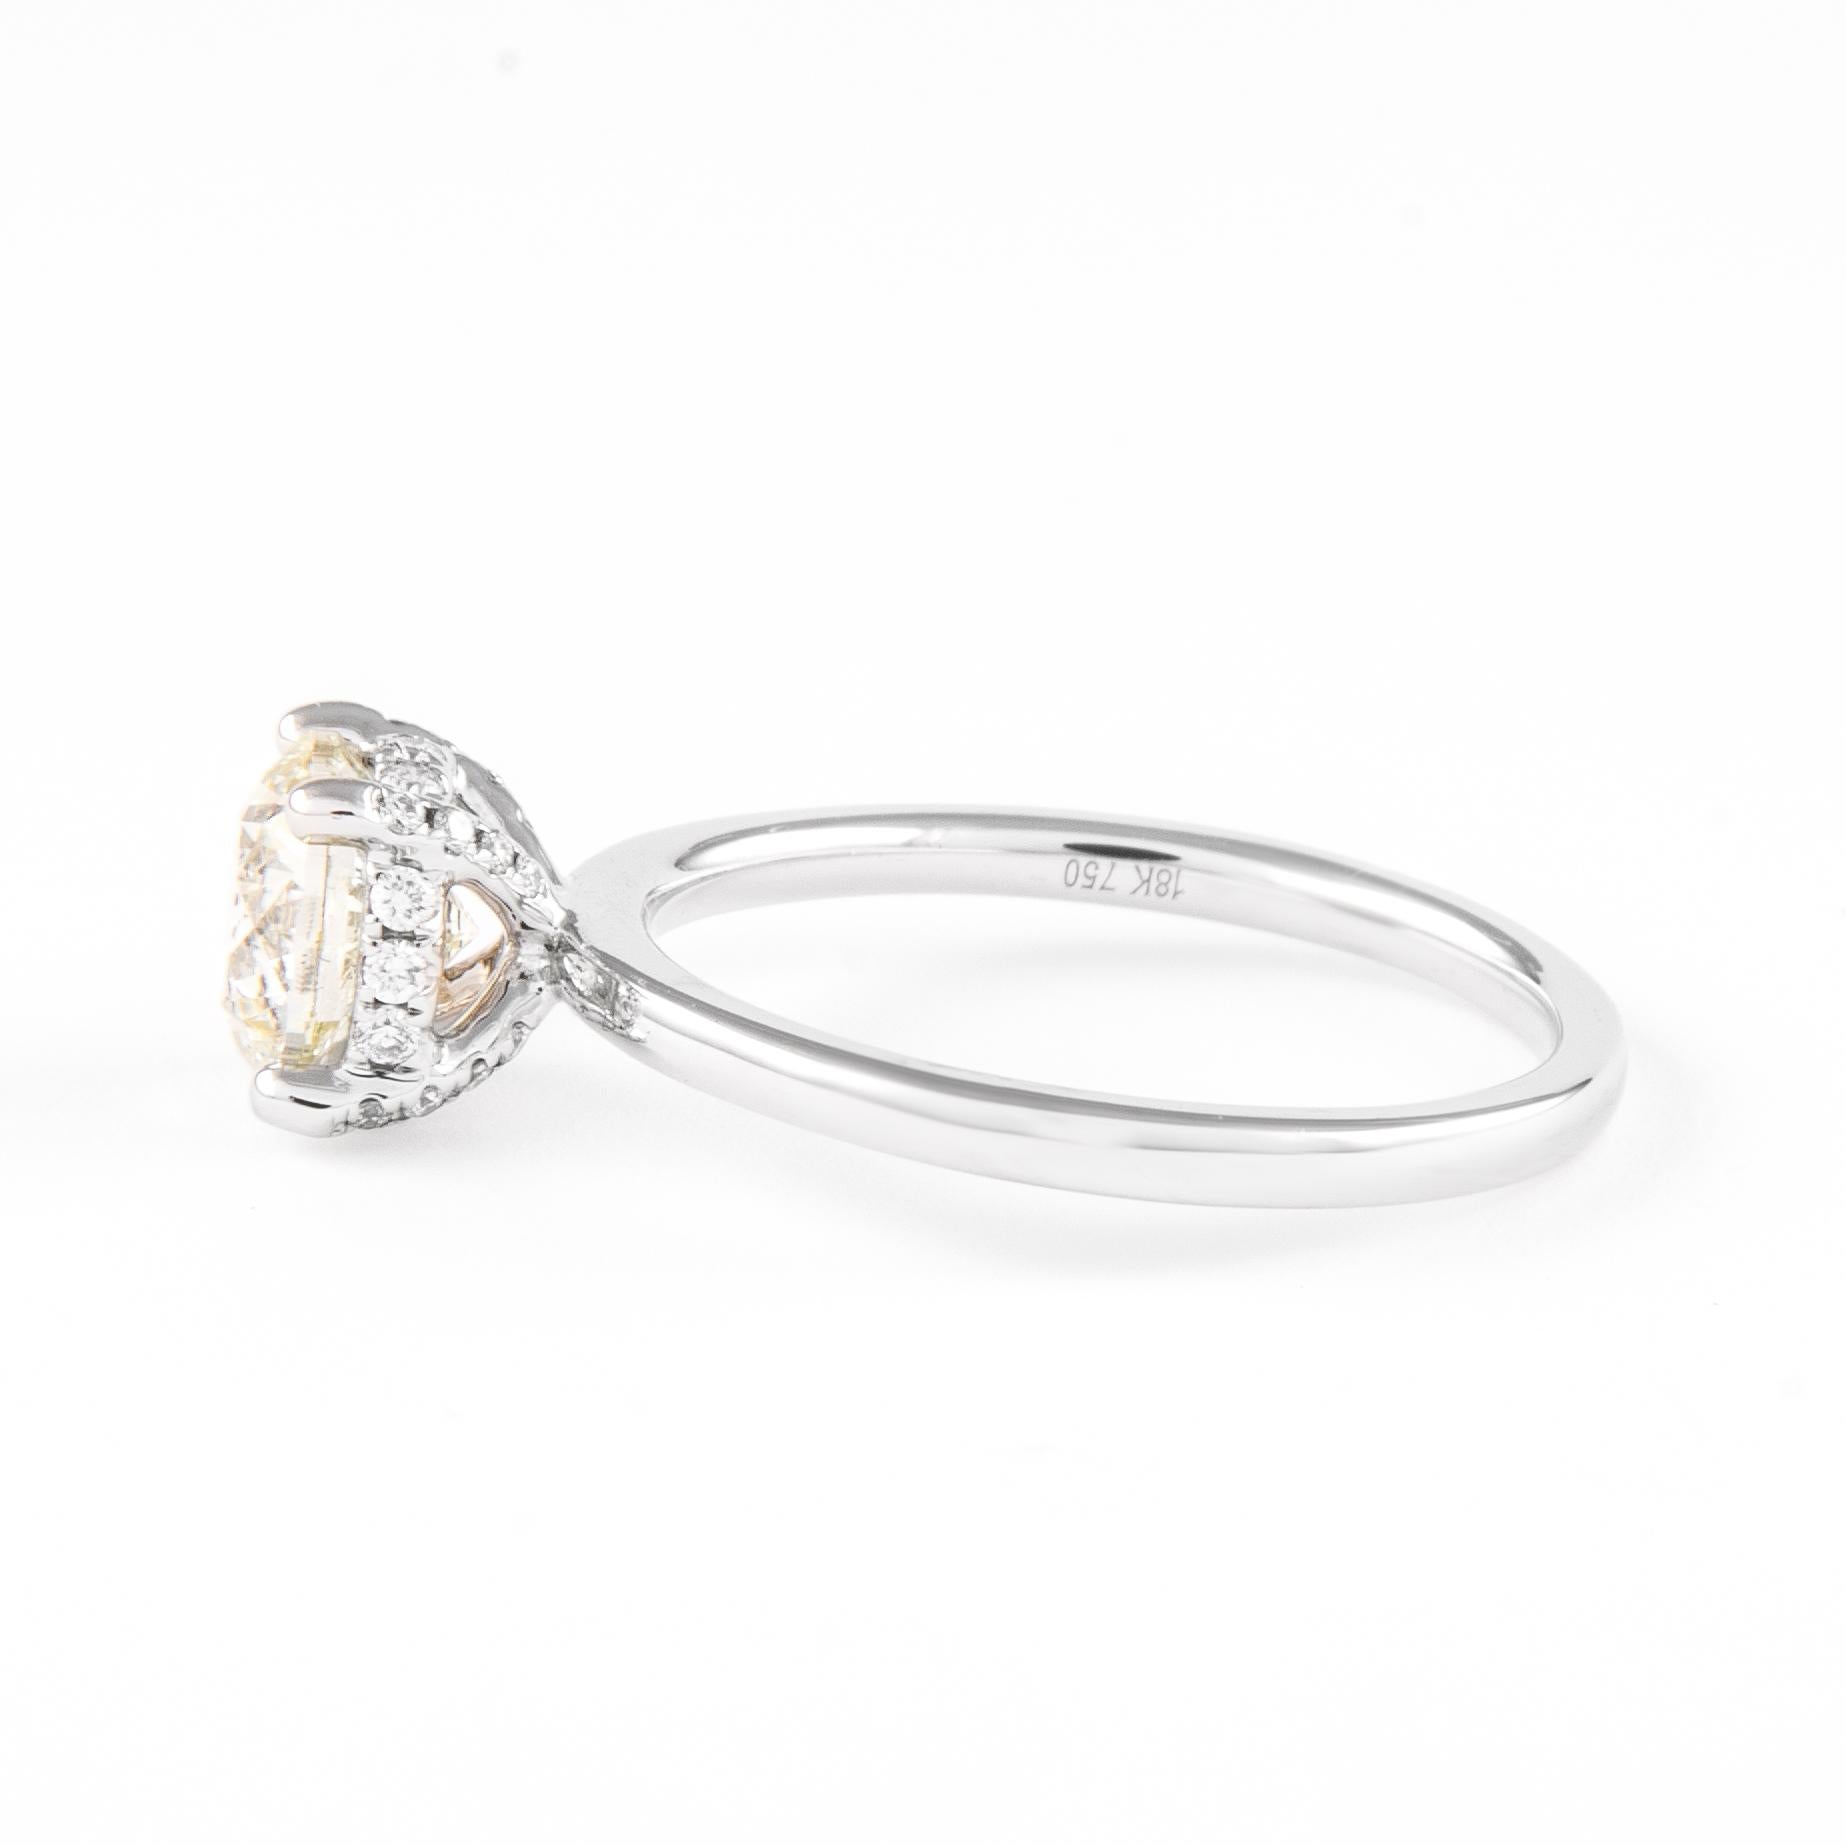 18 carat diamond ring price